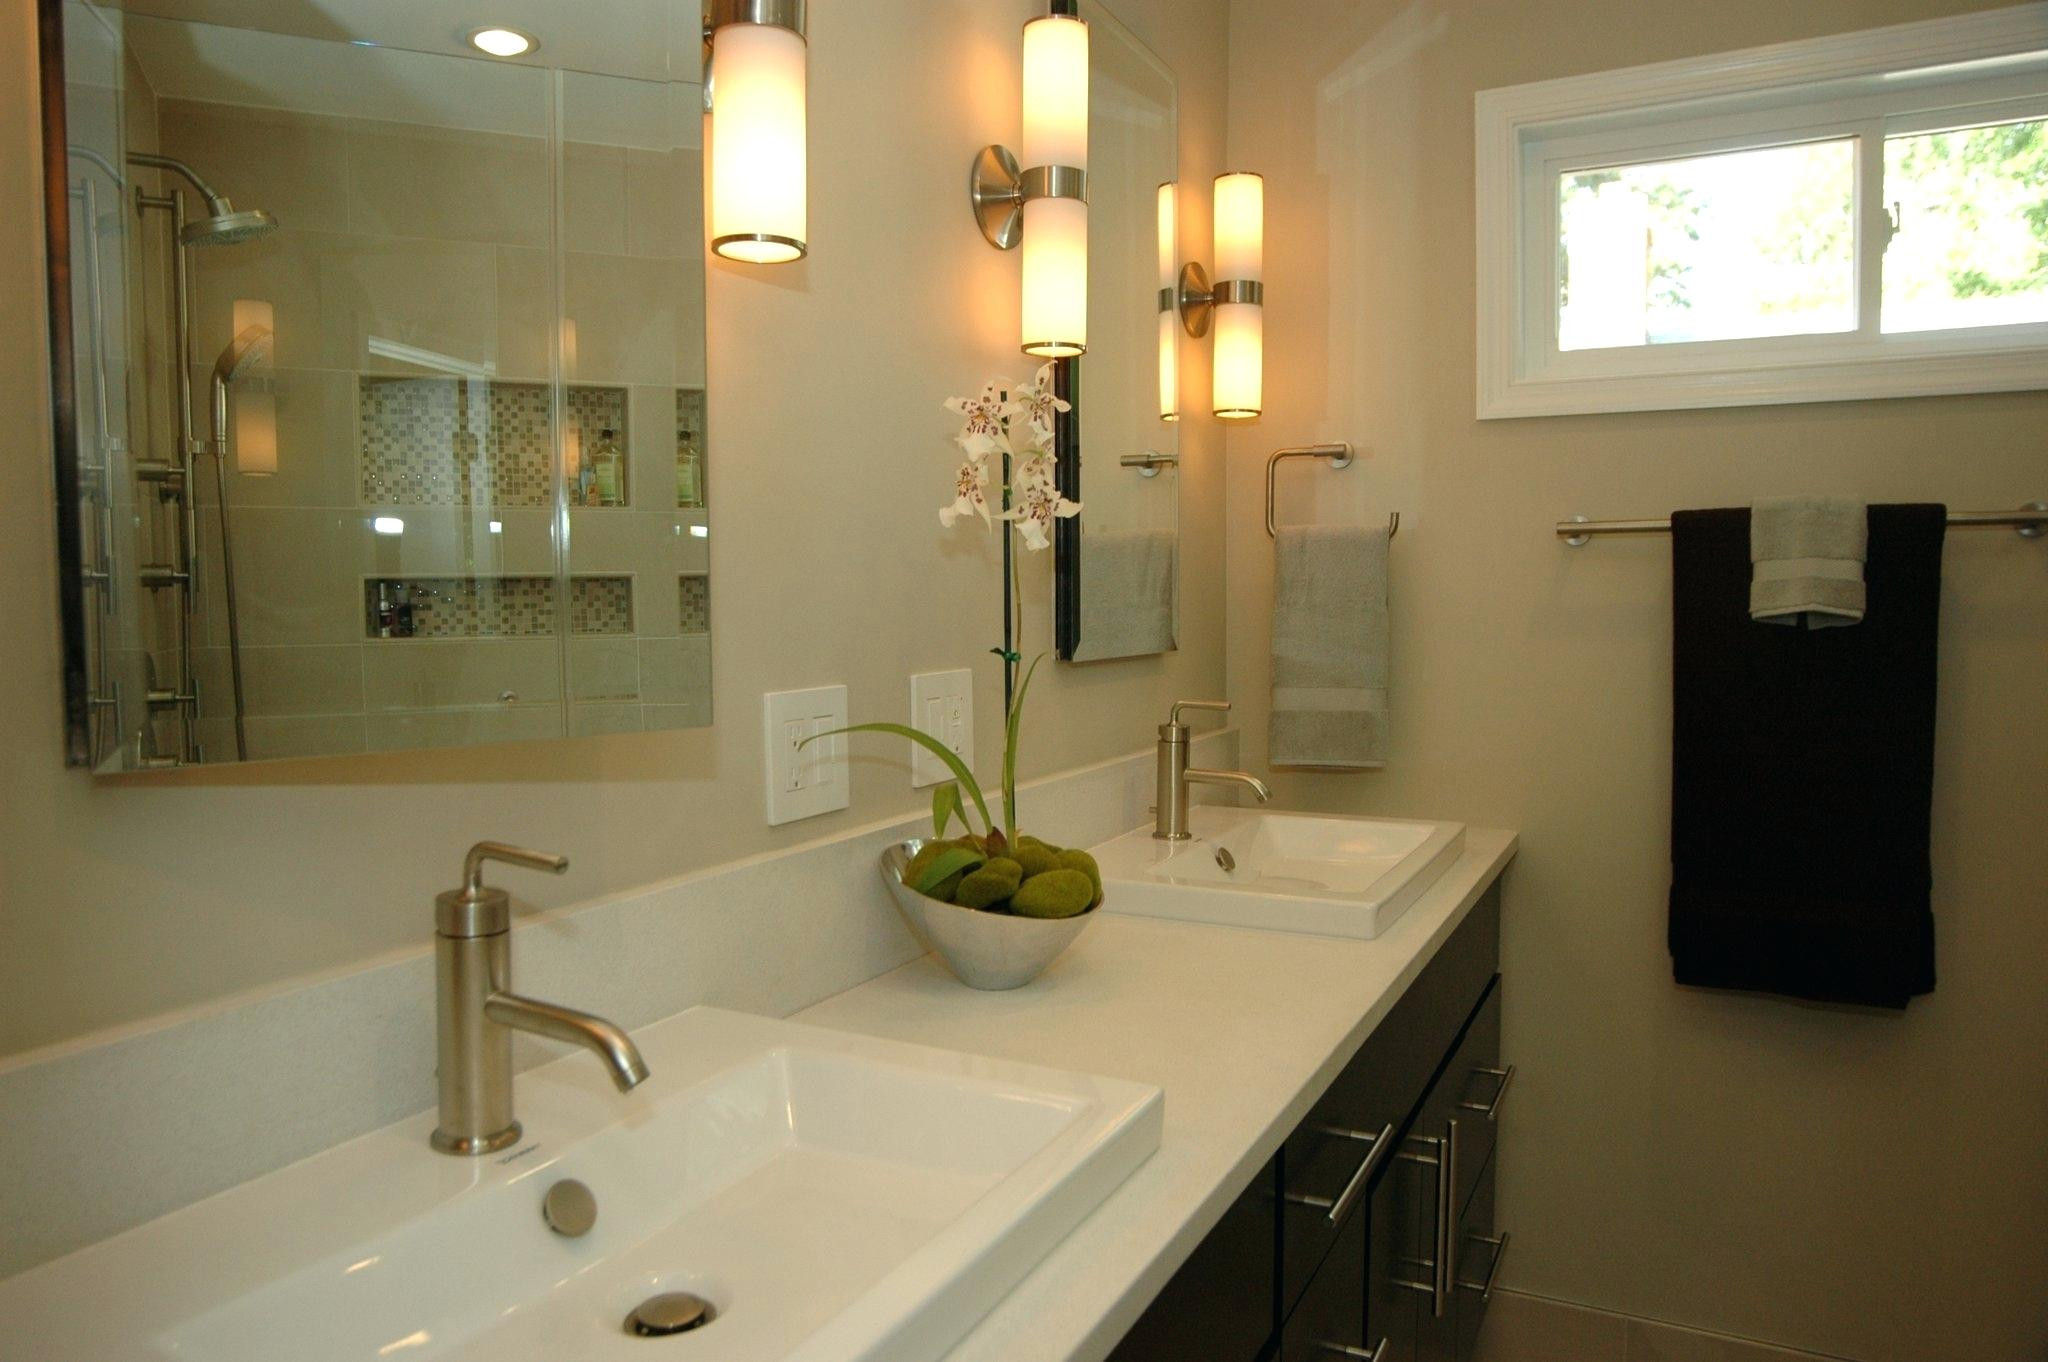 Lowes Lighting Bathroom
 20 Best Bathroom Lighting Ideas